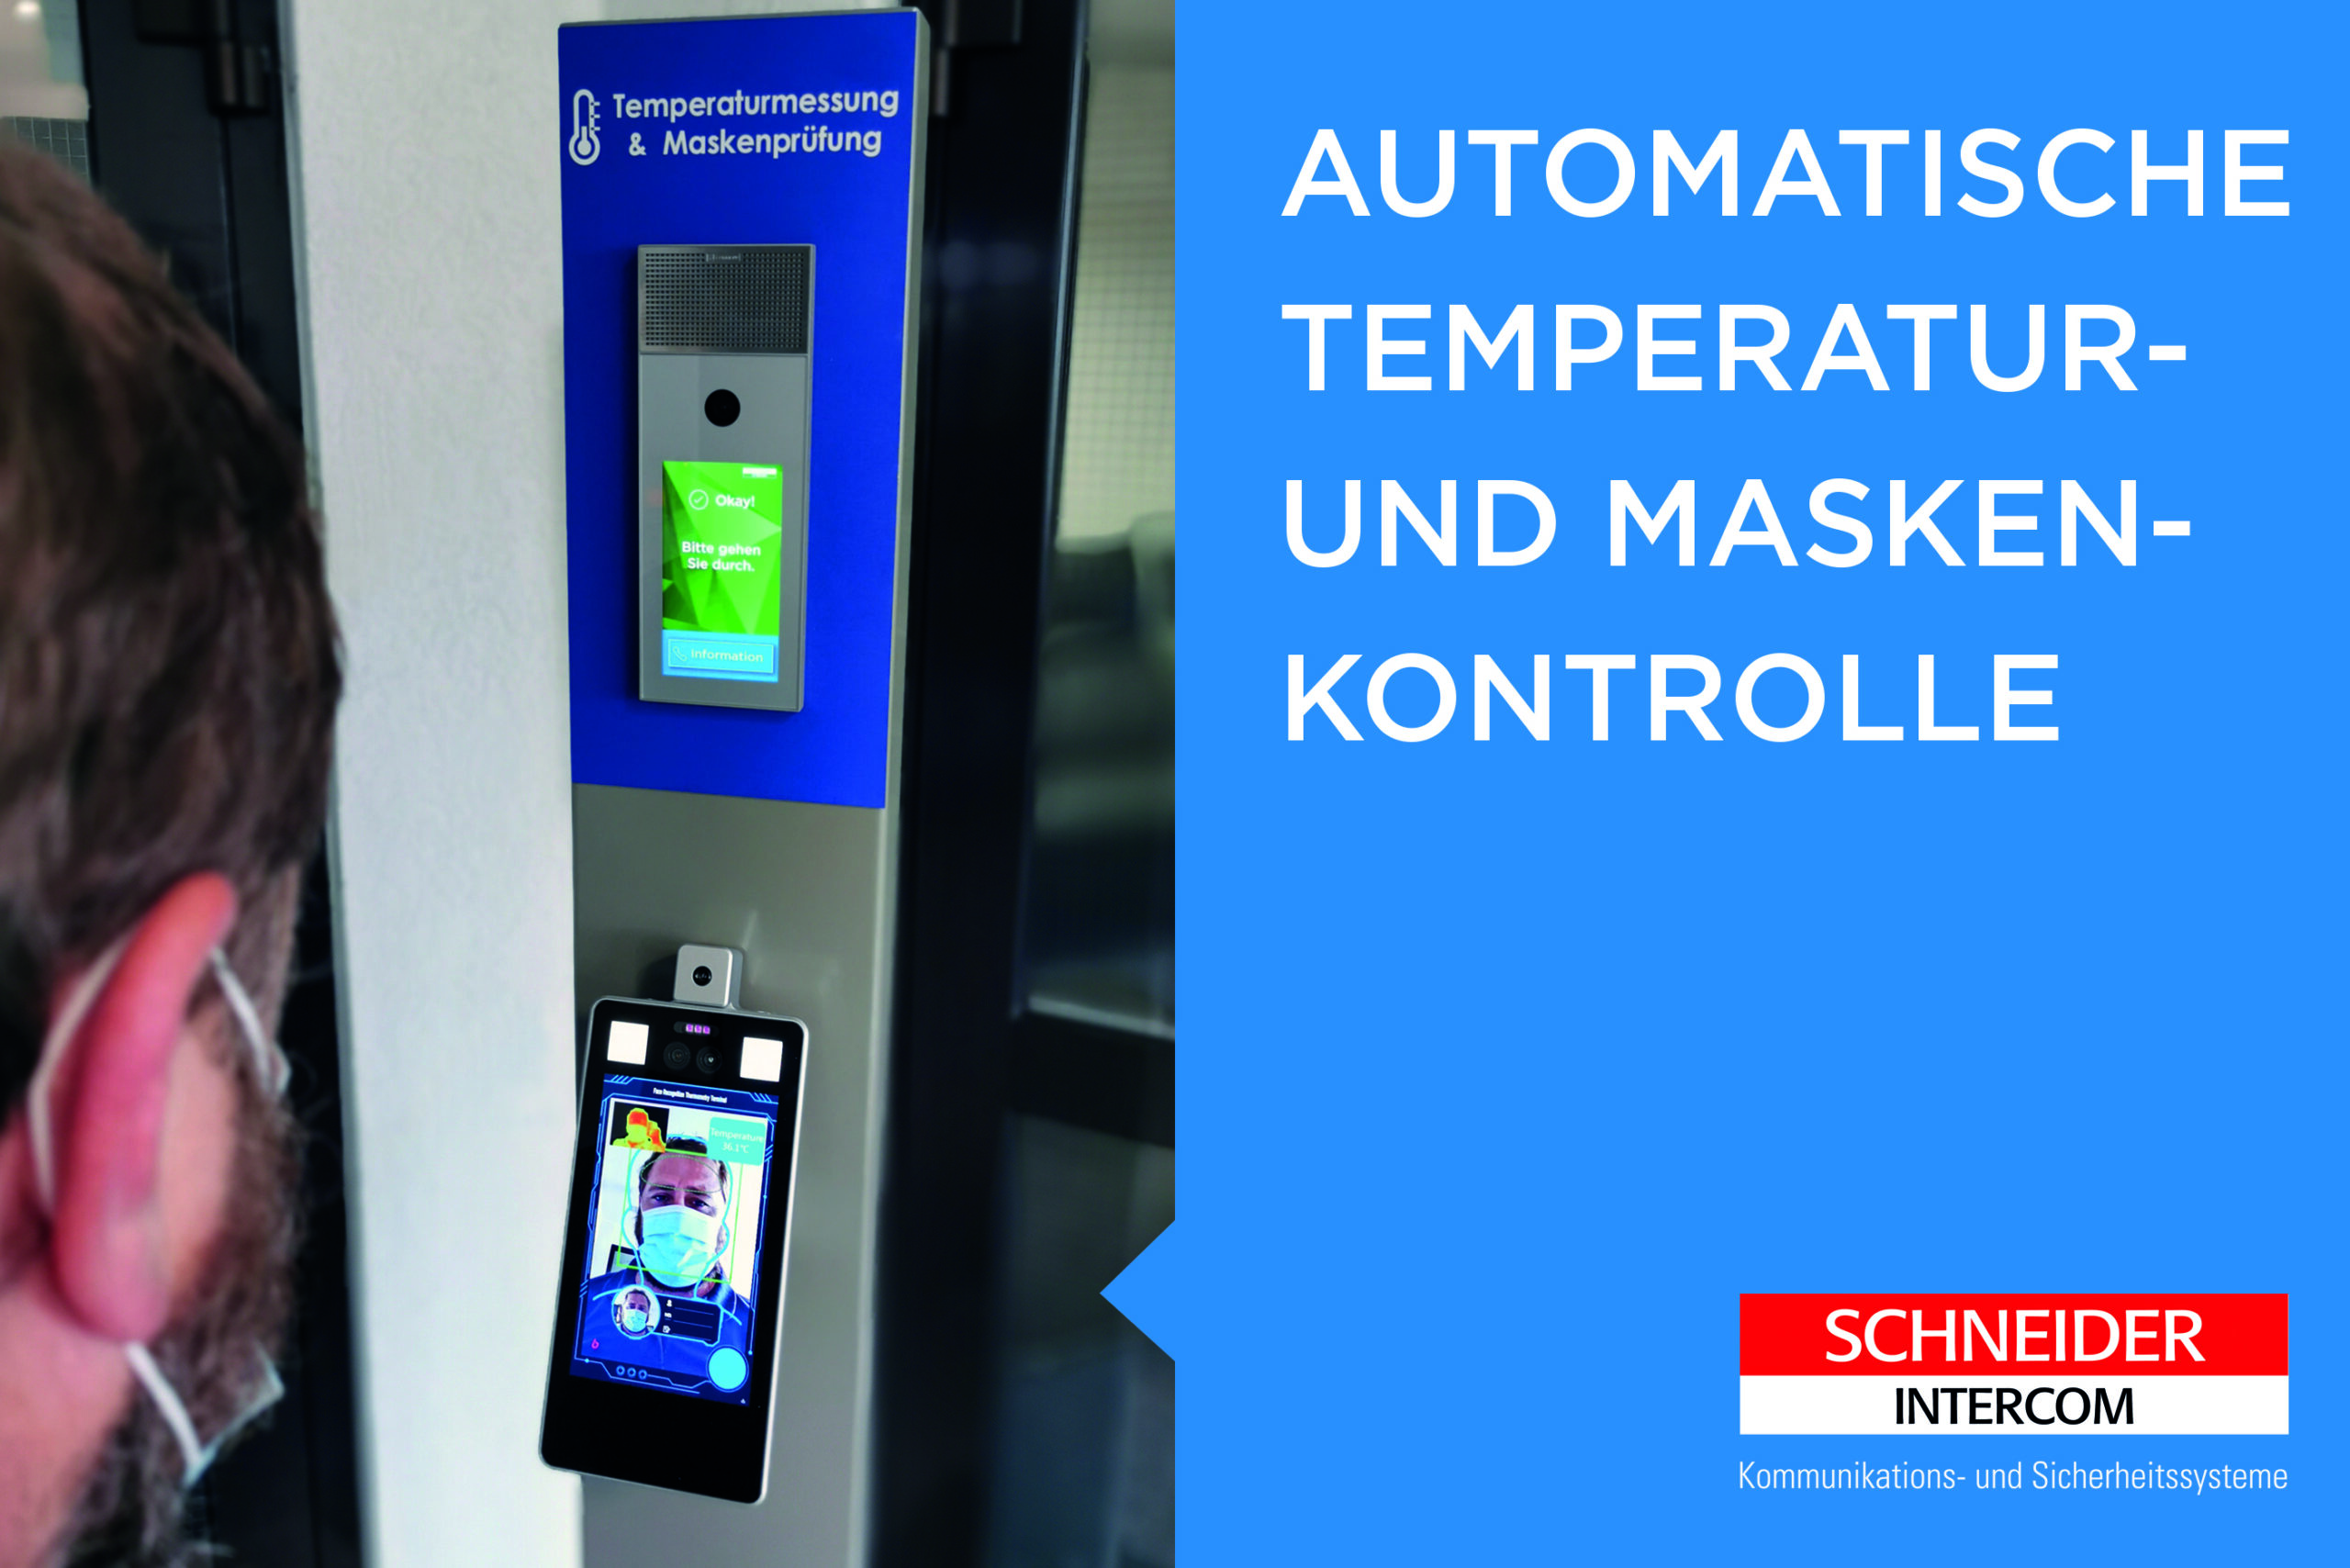 Schneider Intercom Lösung für automatische Temperatur- und Maskenkontrolle